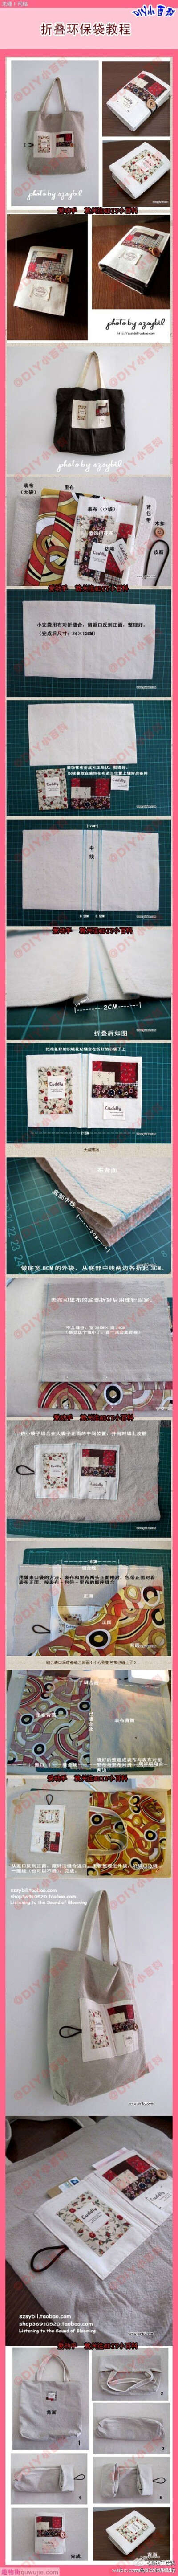 DIY折叠环保袋教程